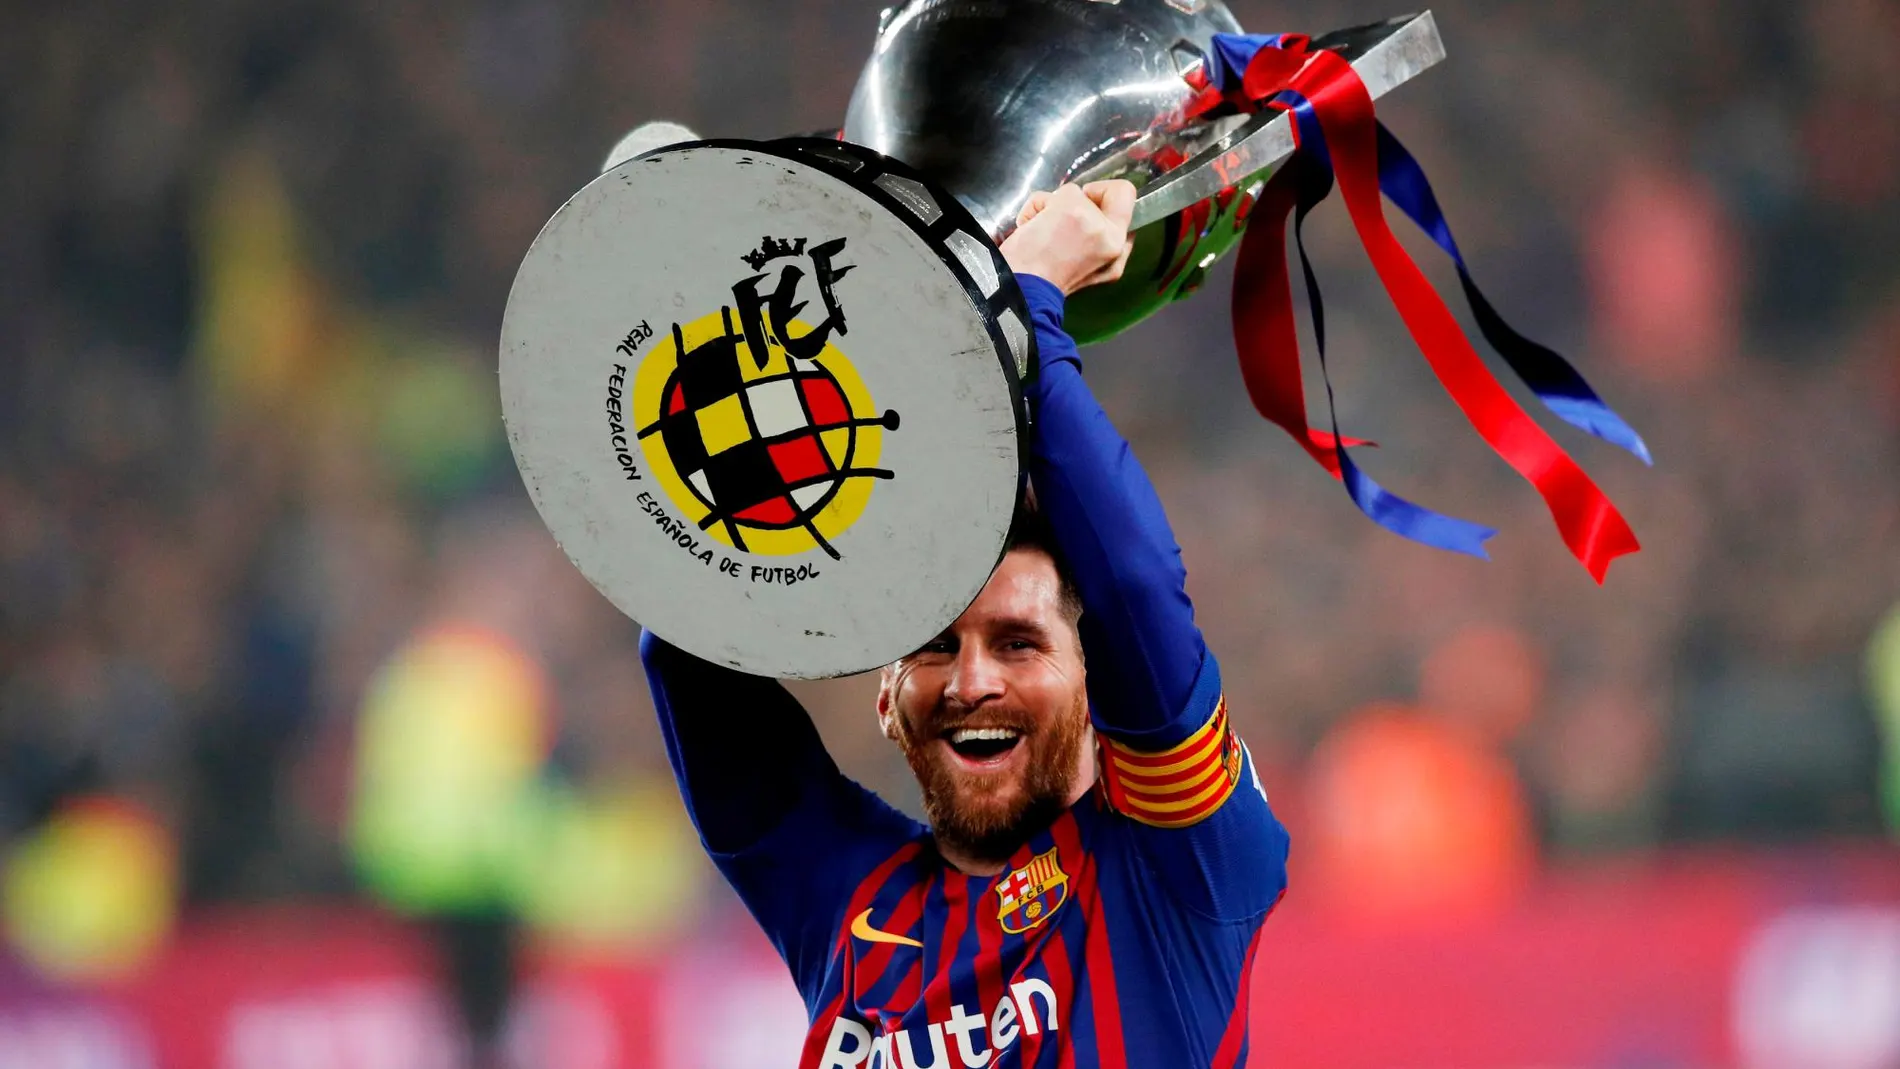 De Leo Messi, la Generalitat destaca que es reconocido como el mejor futbolista de todos los tiempos y encarna unos atributos sociales primordiales como la humildad, honestidad, creatividad, sentido de equipo y respeto